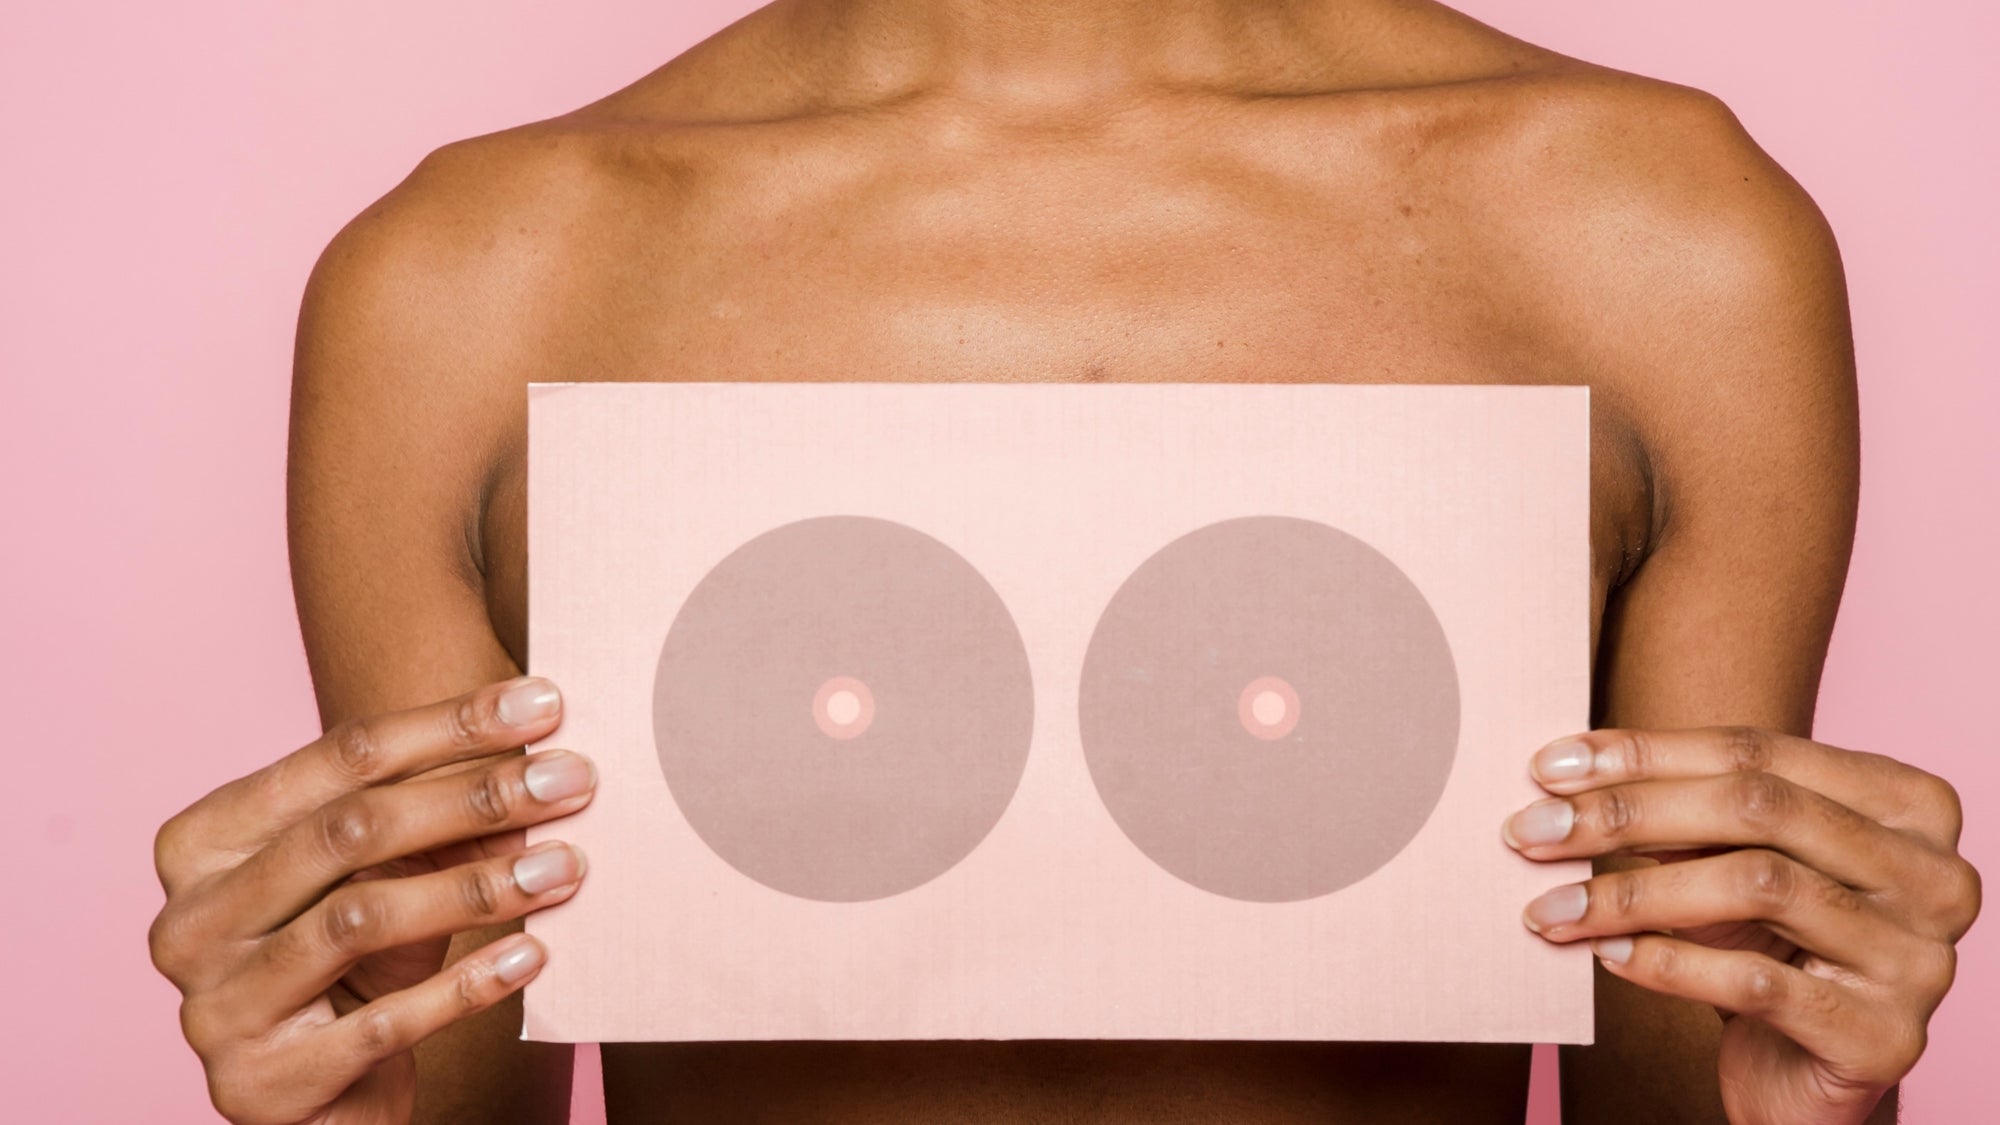 The mastectomy explained